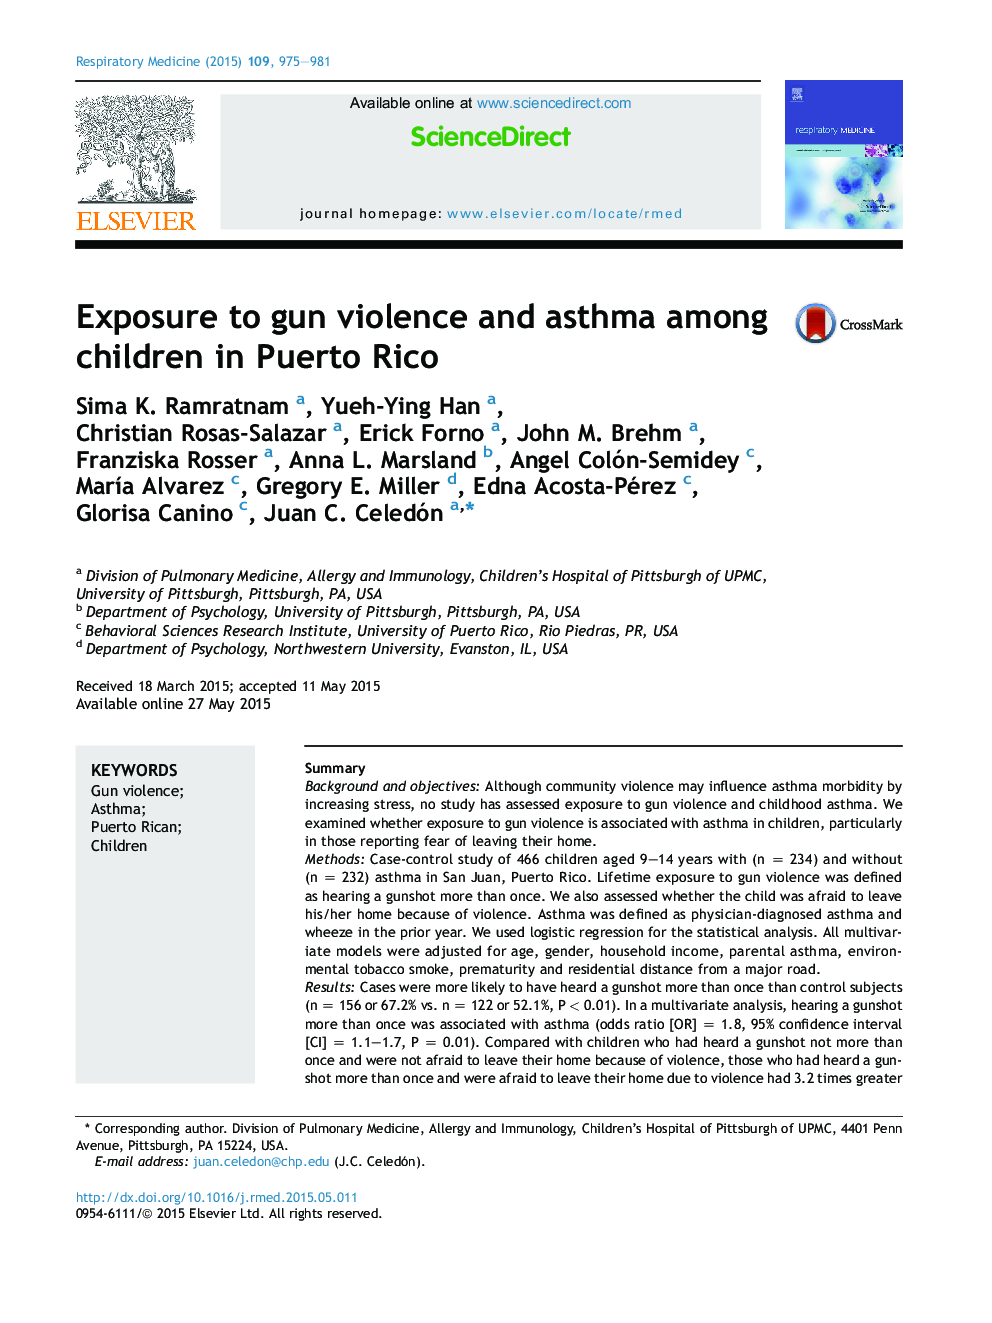 قرار گرفتن در معرض خشونت اسلحه و آسم در میان کودکان در پورتوریکو 